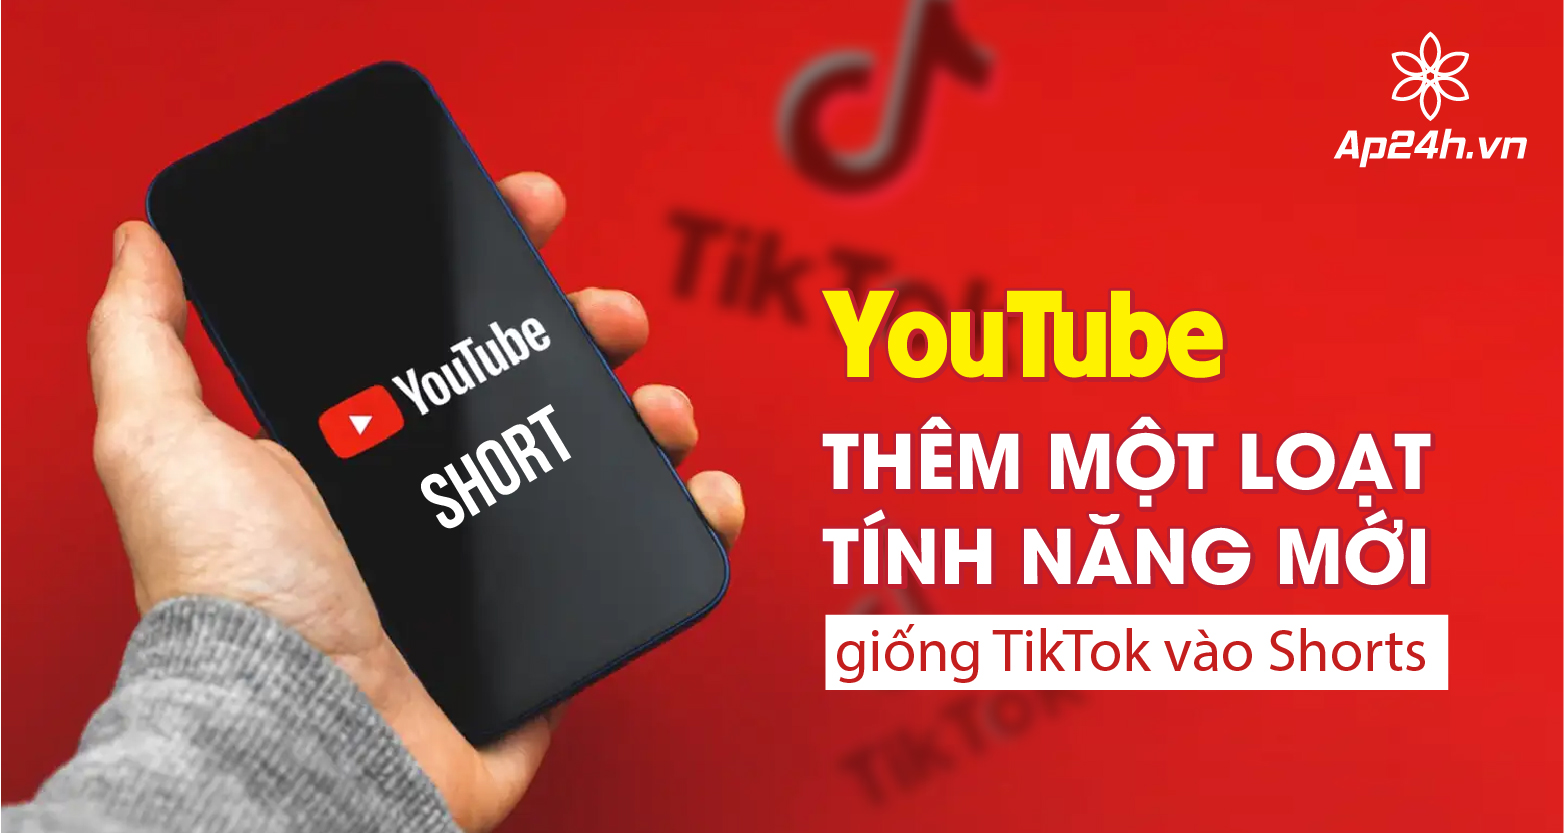 YouTube thêm một loạt tính năng mới giống TikTok vào Shorts